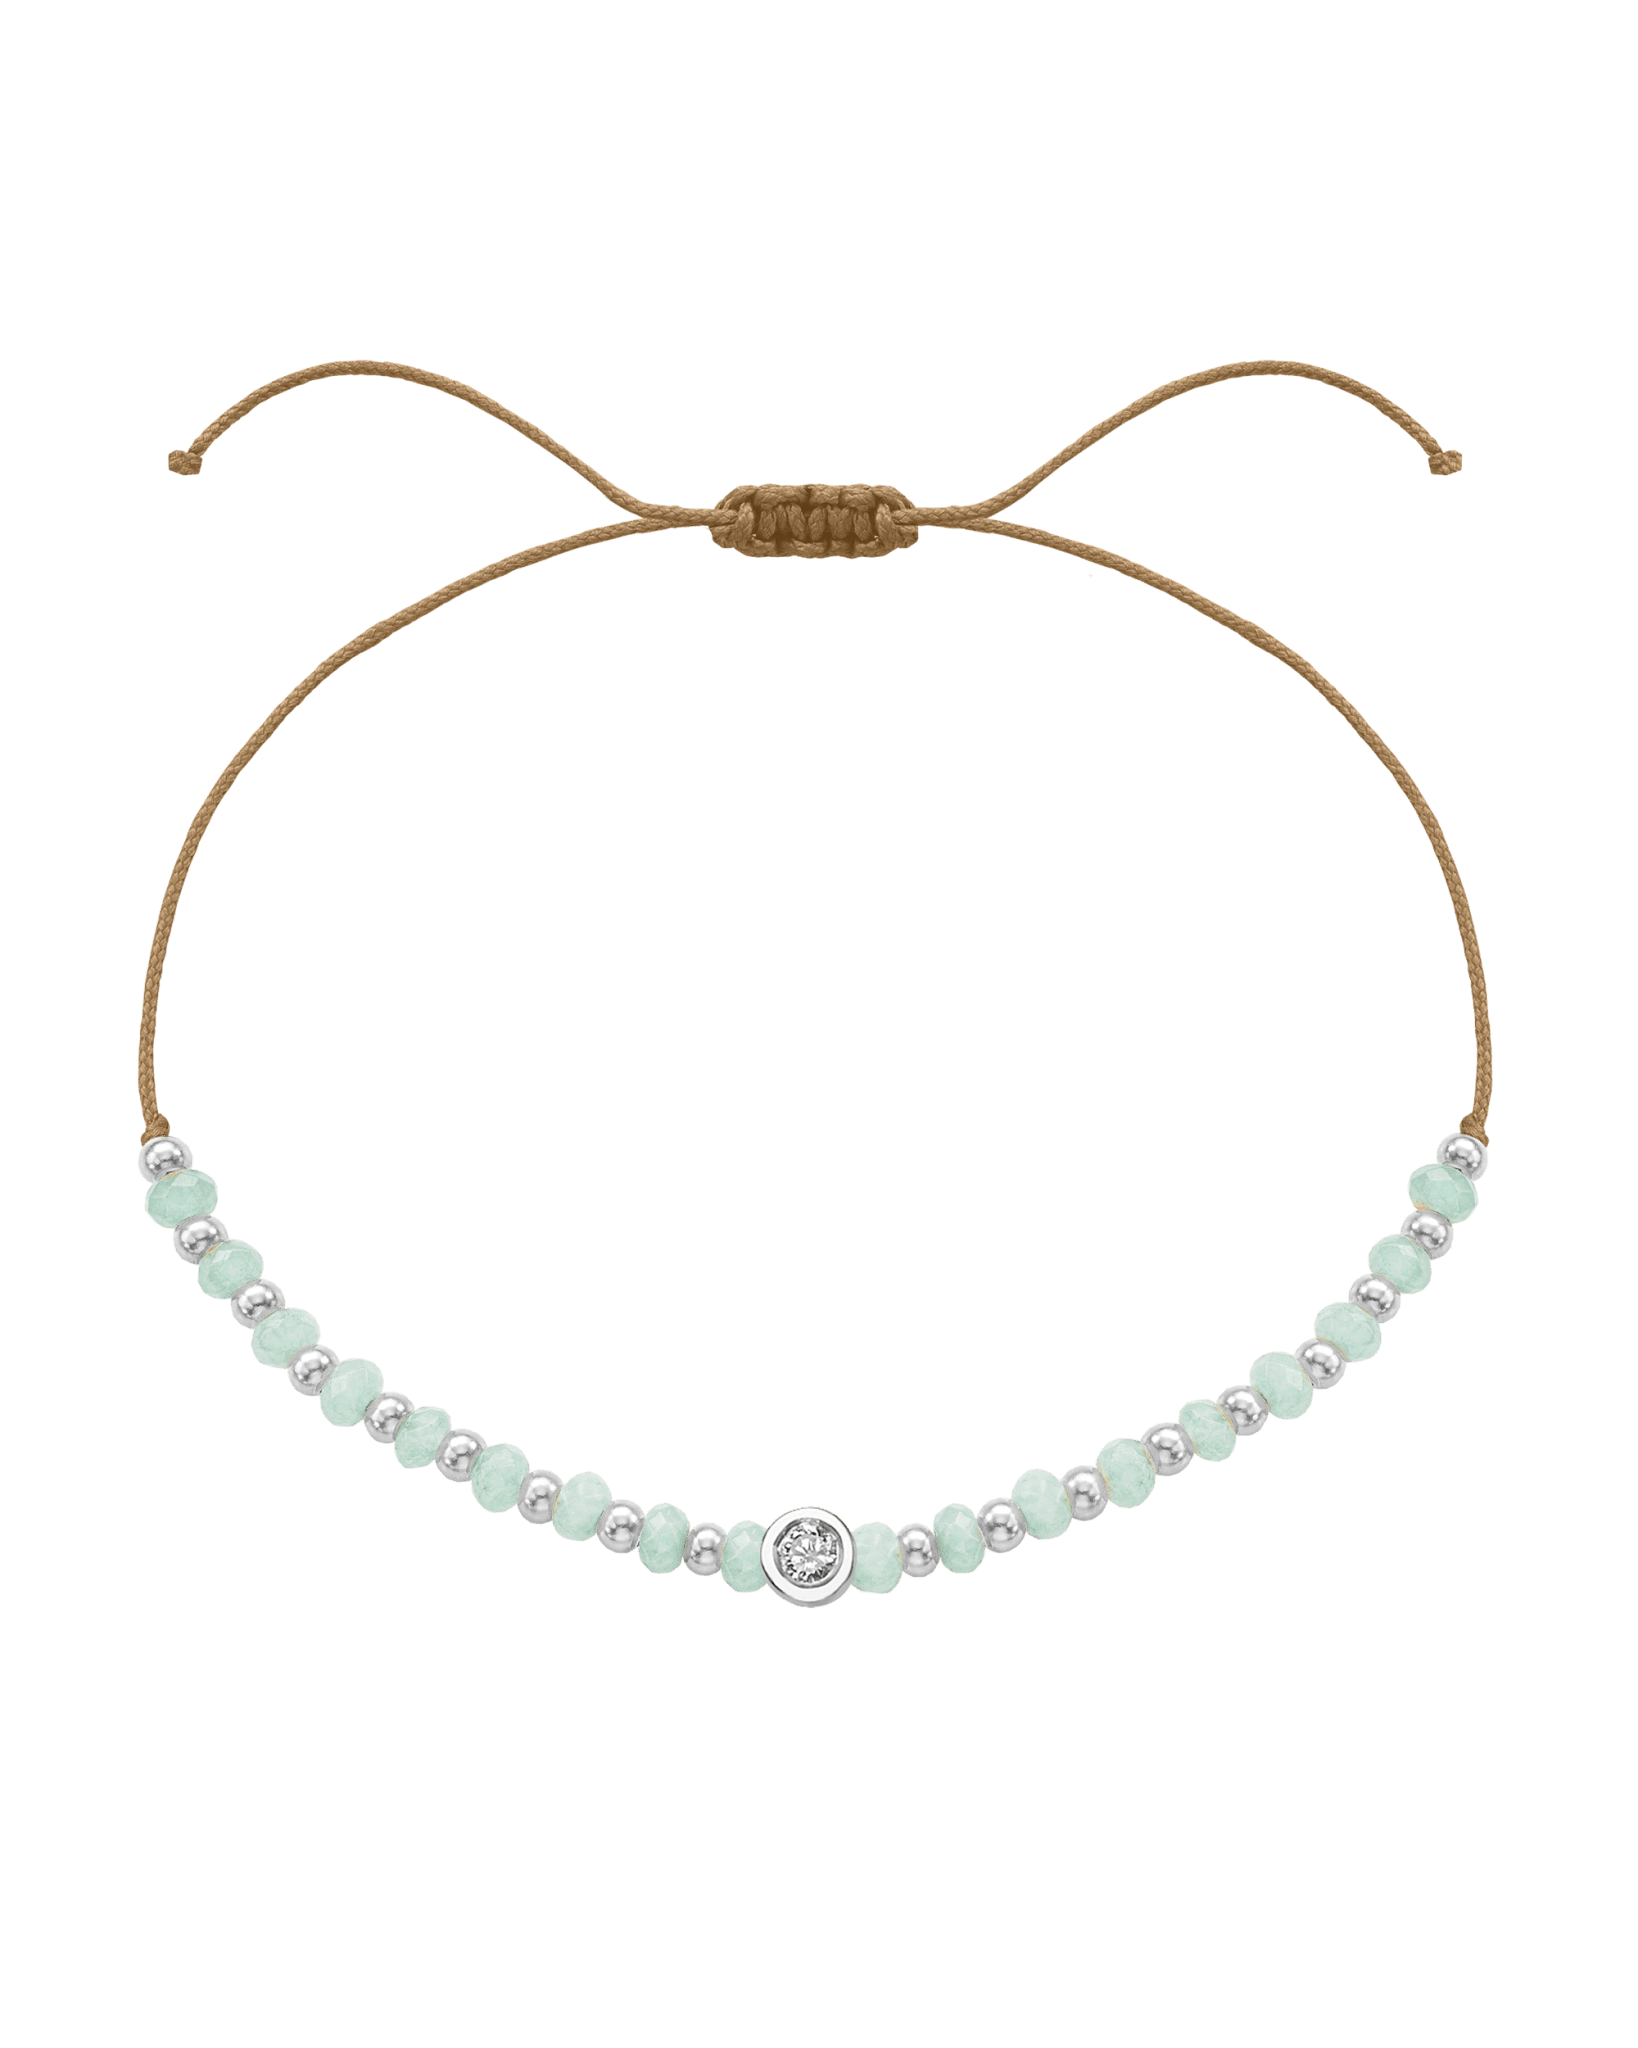 Apatite Gemstone String of Love Bracelet for Inspiration - 14K White Gold Bracelets 14K Solid Gold Camel Medium: 0.04ct 